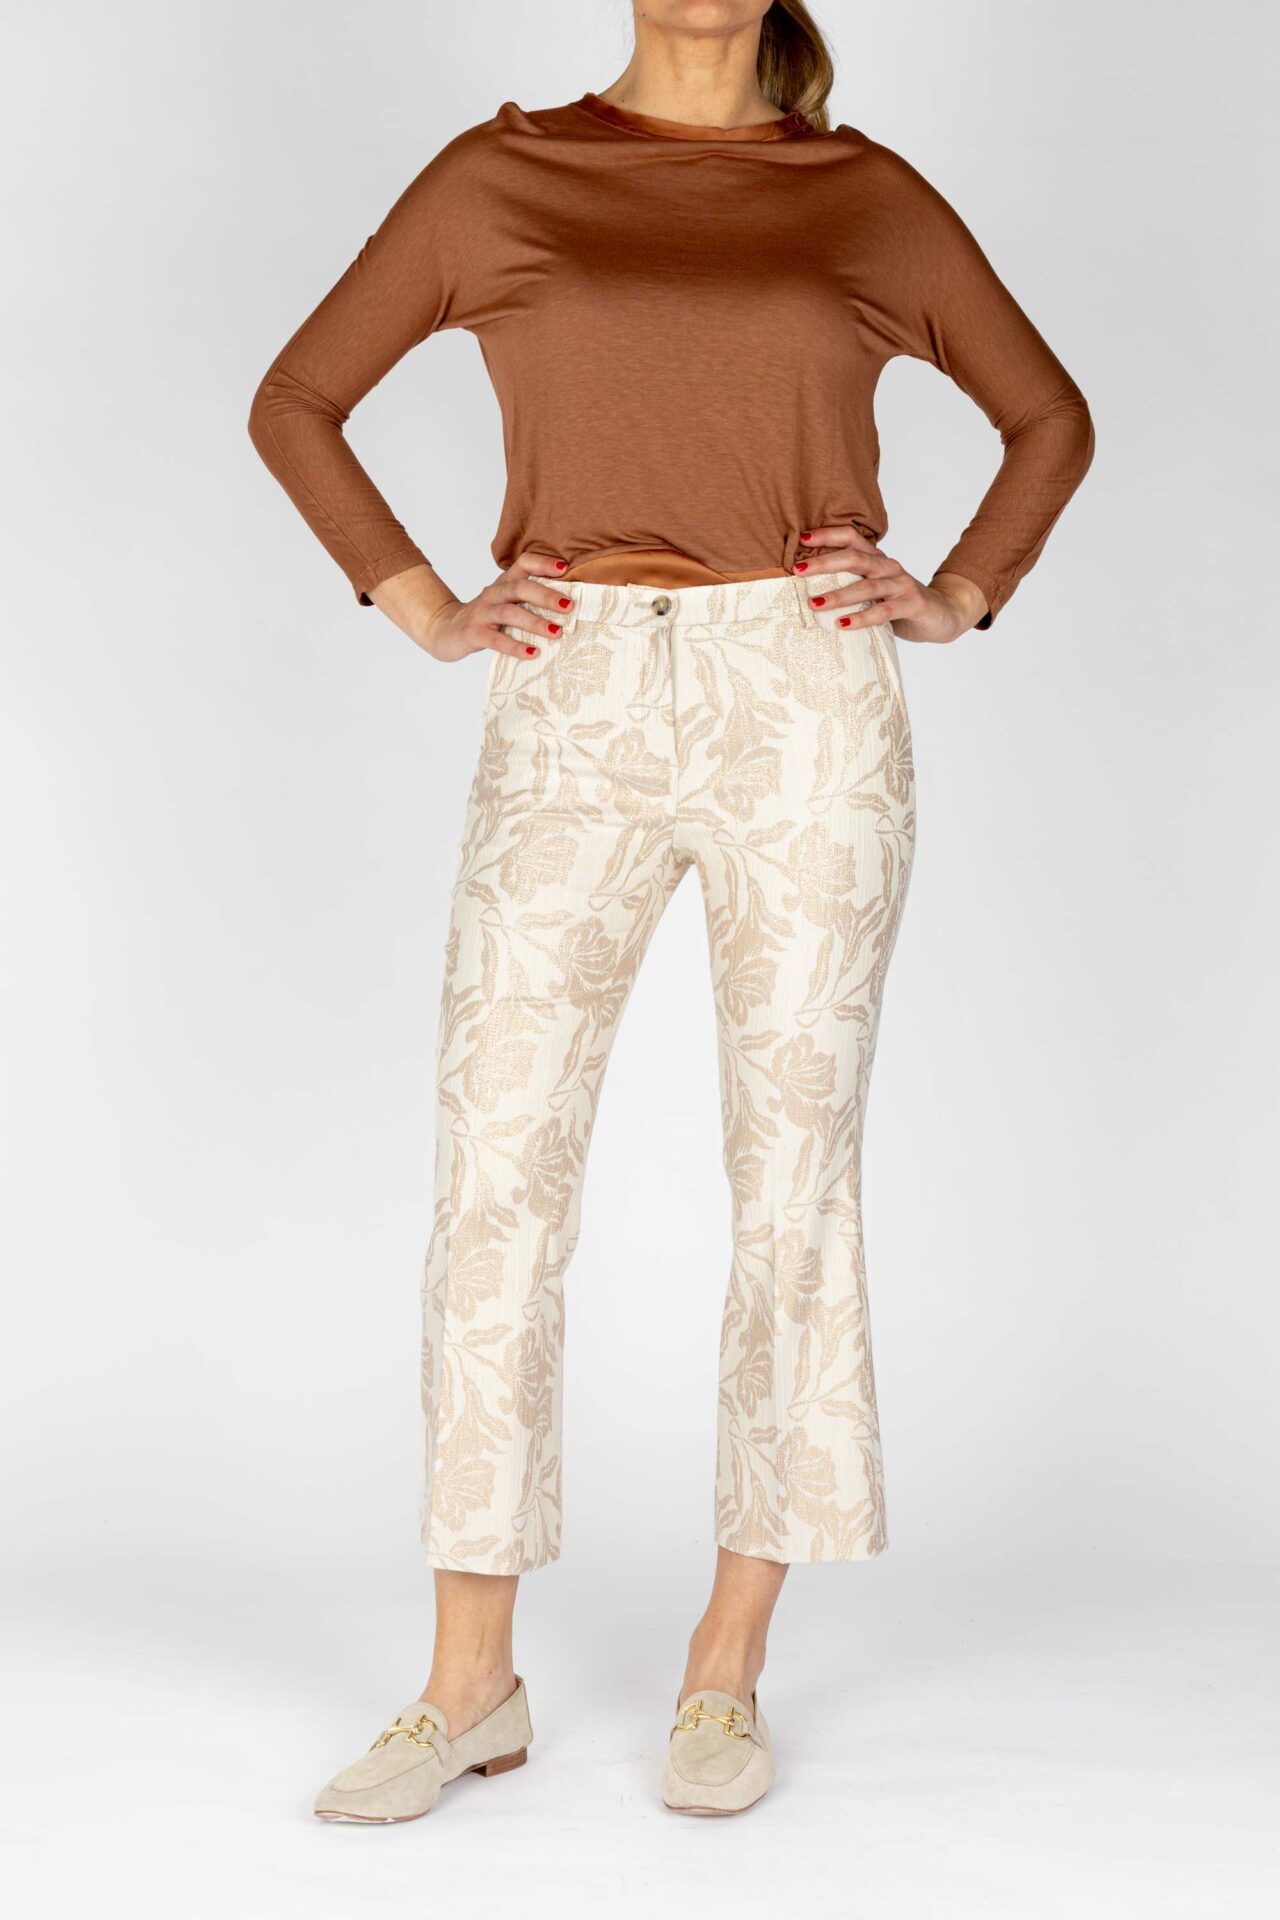 Pantaloni disegno fiore colore beige, linea zampetta tessuto jacquard lurex